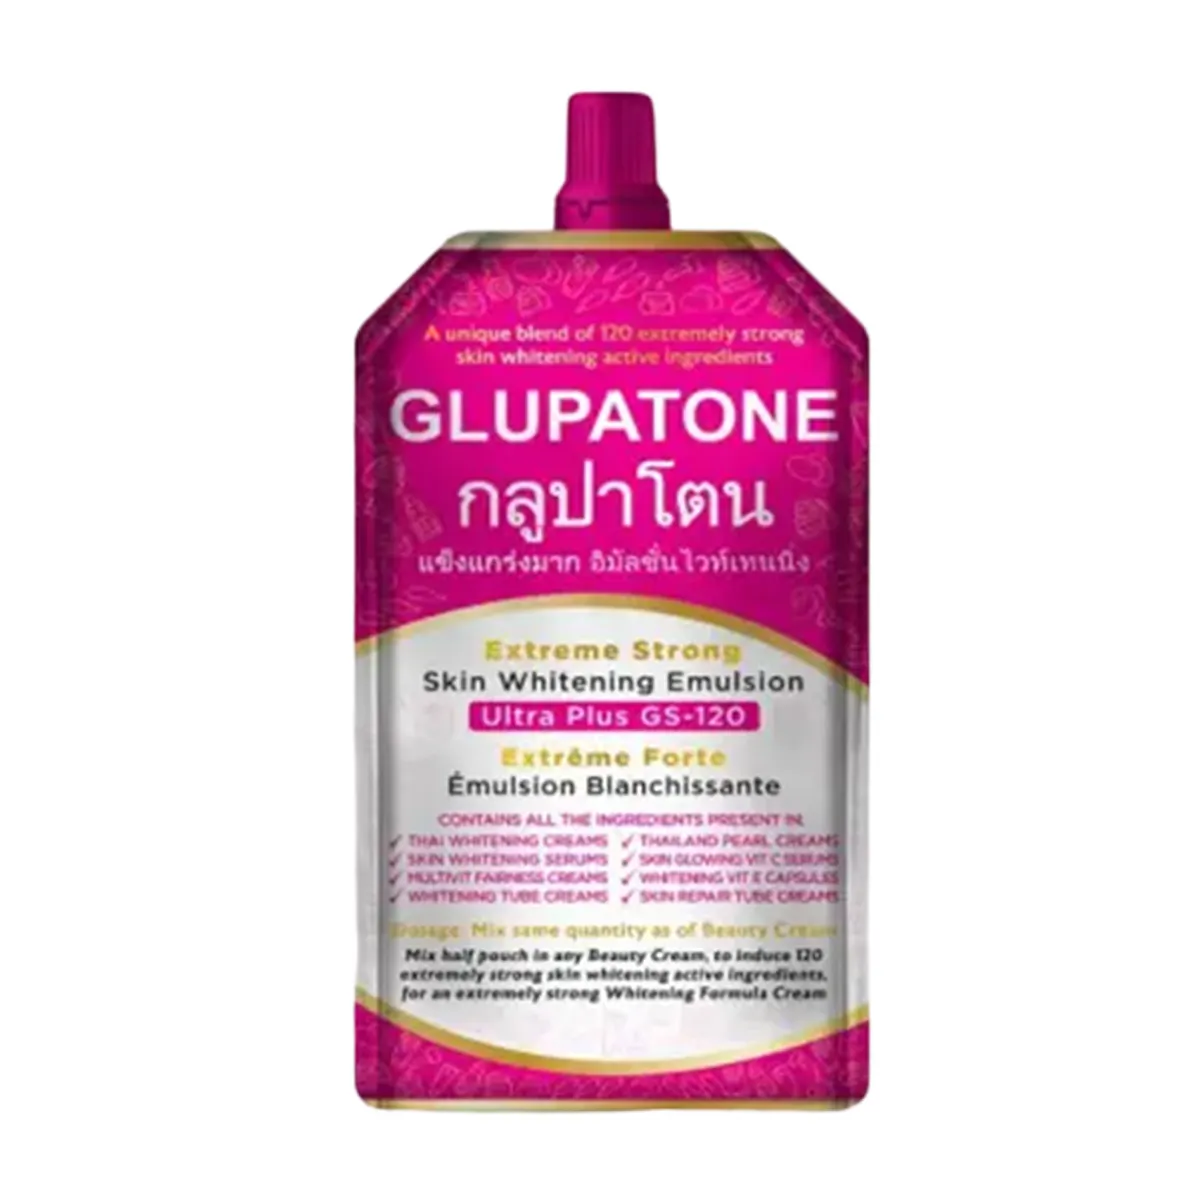 GLUPATONE Extreme Strong Whitening Emulsion Ultra Plus